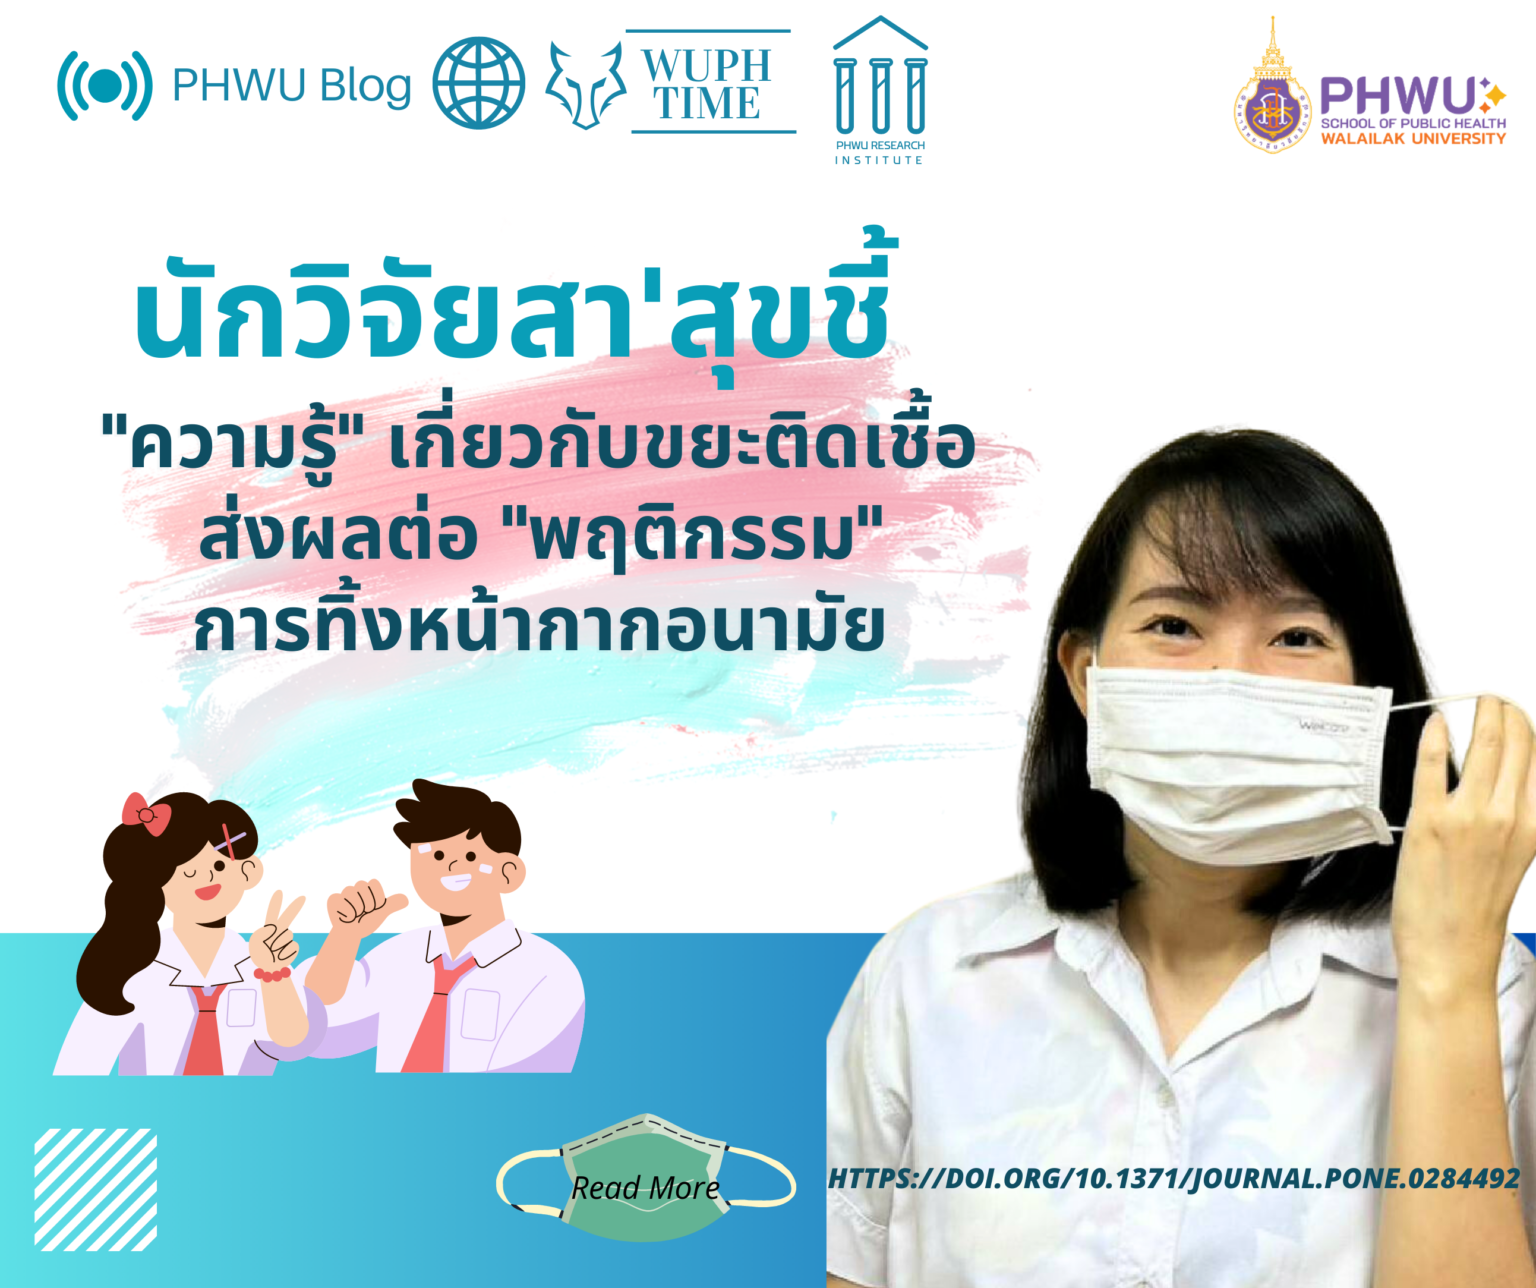 บทความวิจัย เรื่อง Knowledge and practice of facemask disposal among university students in Thailand: A new normal post the COVID-19 pandemic